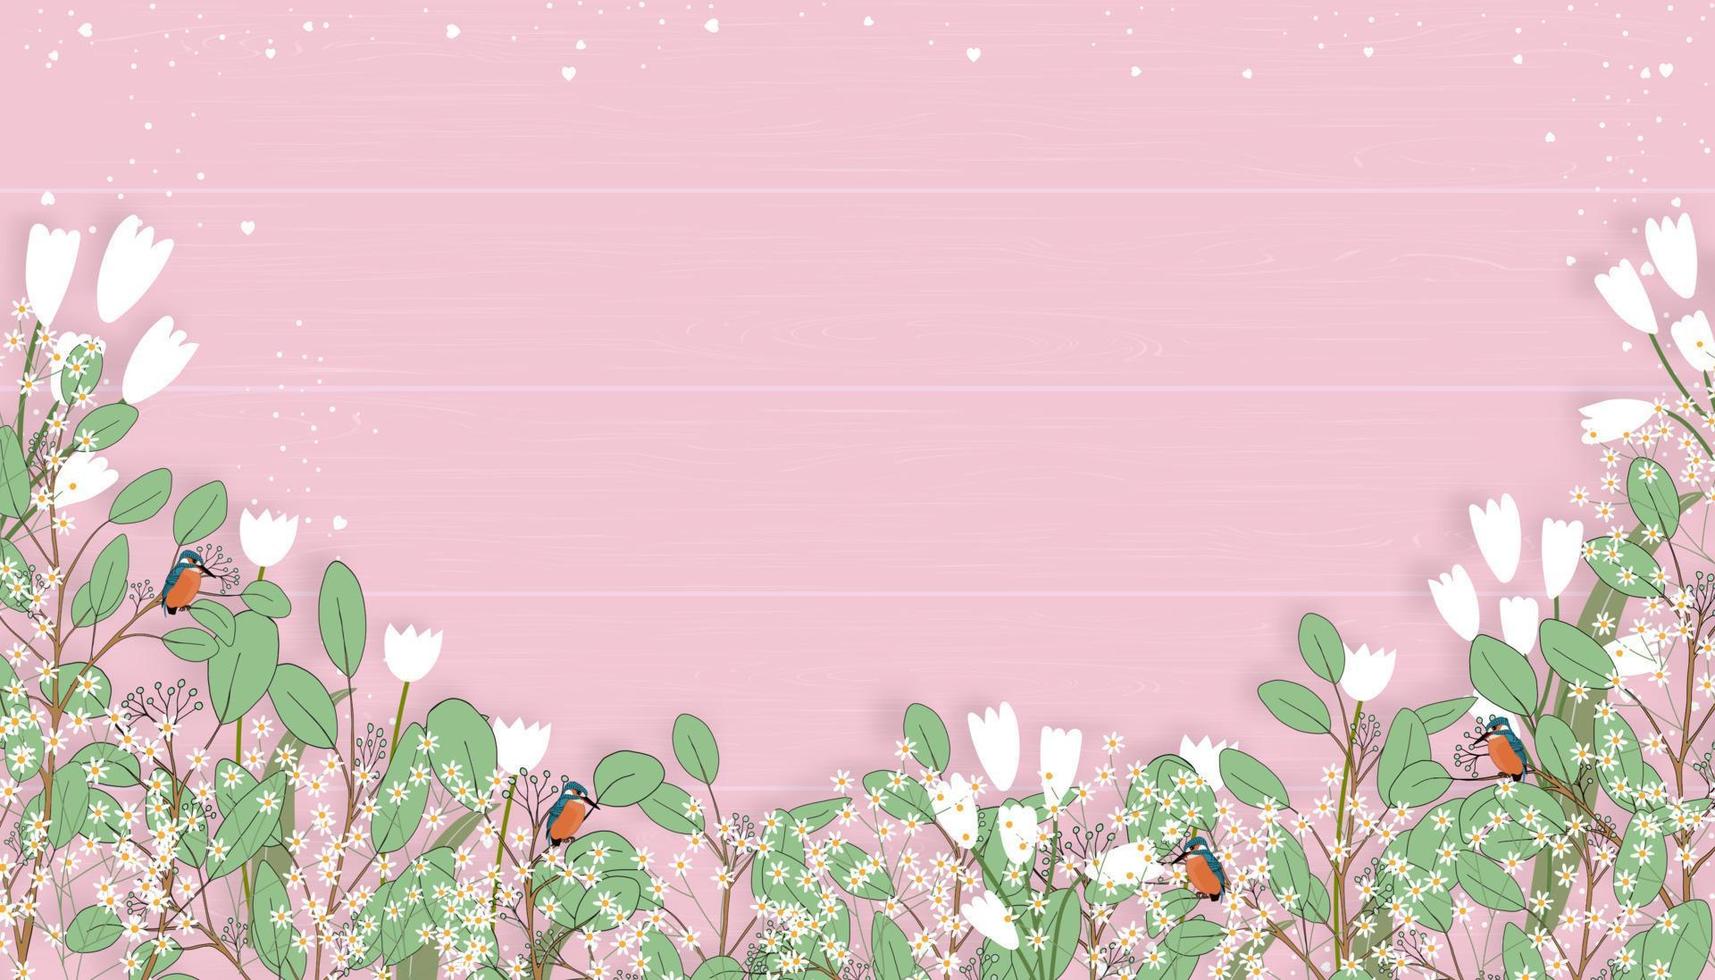 carte de fête des mères avec des branches d'eucalyptus laisse une bordure sur fond de bois rose, toile de fond d'illustration vectorielle aquarelle vintage feuilles vertes botaniques conception de pour mariage, fond de la Saint-Valentin vecteur